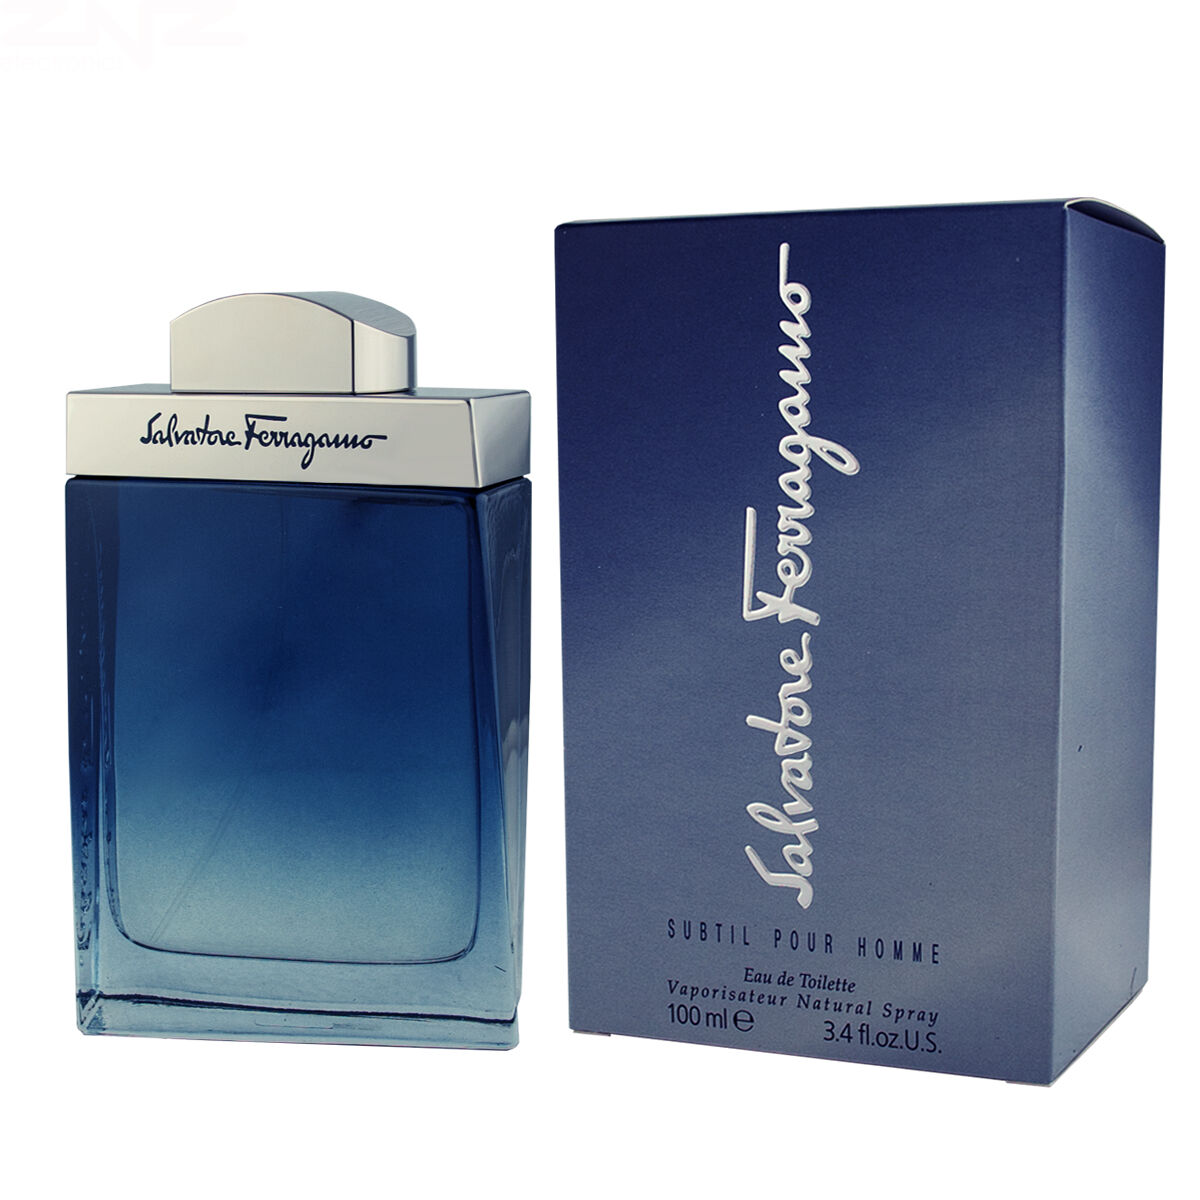 Parfum Homme Salvatore Ferragamo EDT Subtil Pour Homme 100 ml